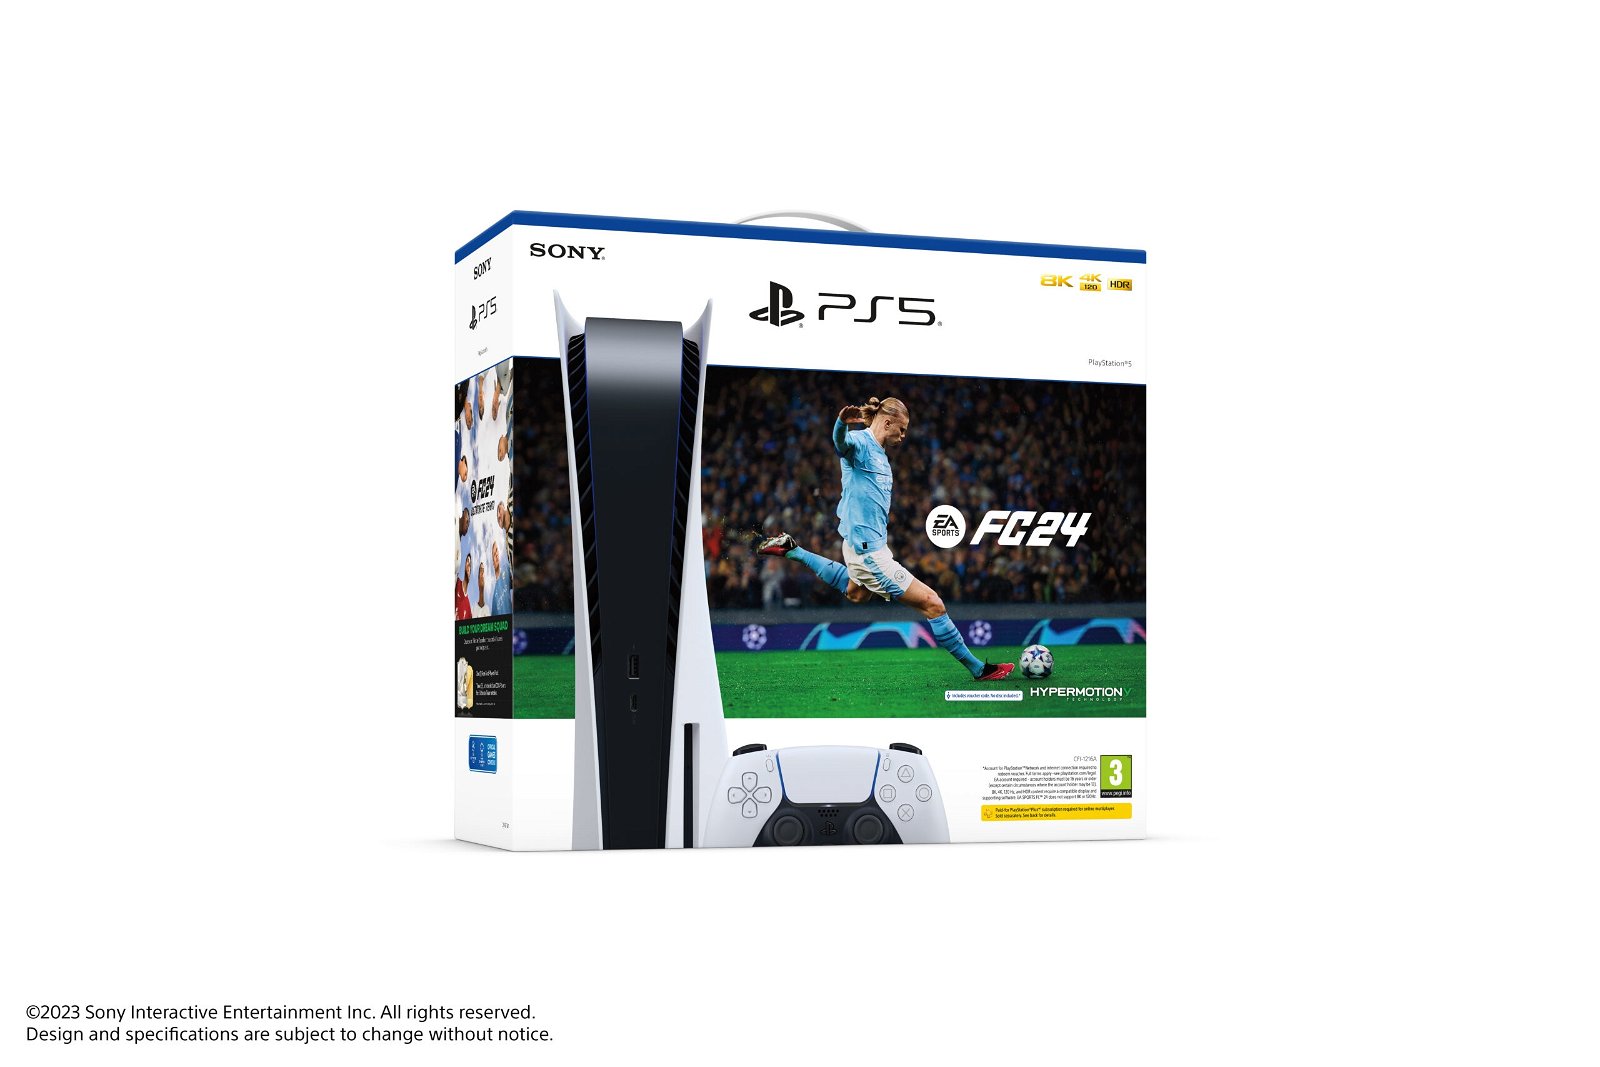 PS5 presenta un pack junto a EA Sports FC 24 que llegará el 29 de